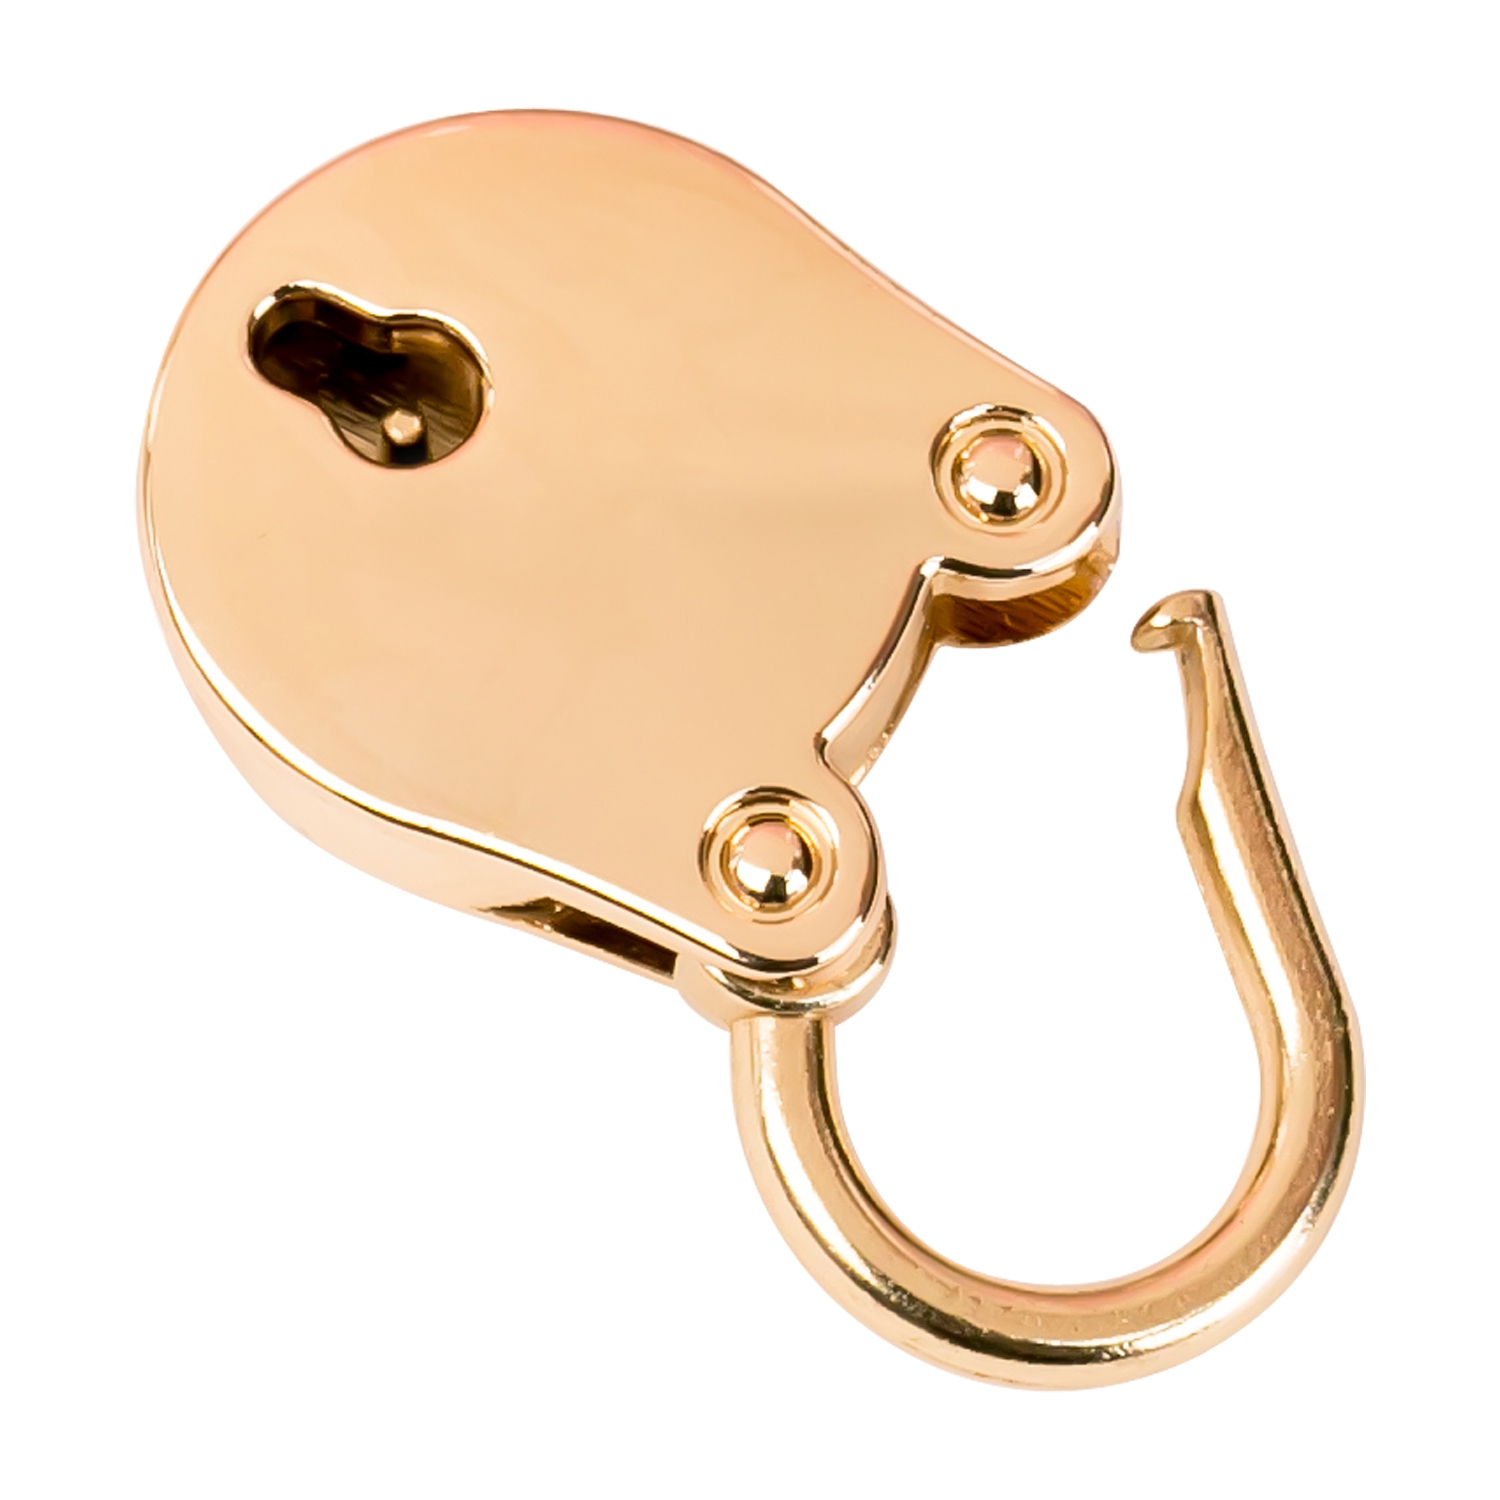 Mini Deko Vorhängeschloss in oval mit Schlüssel von HMF in Gold